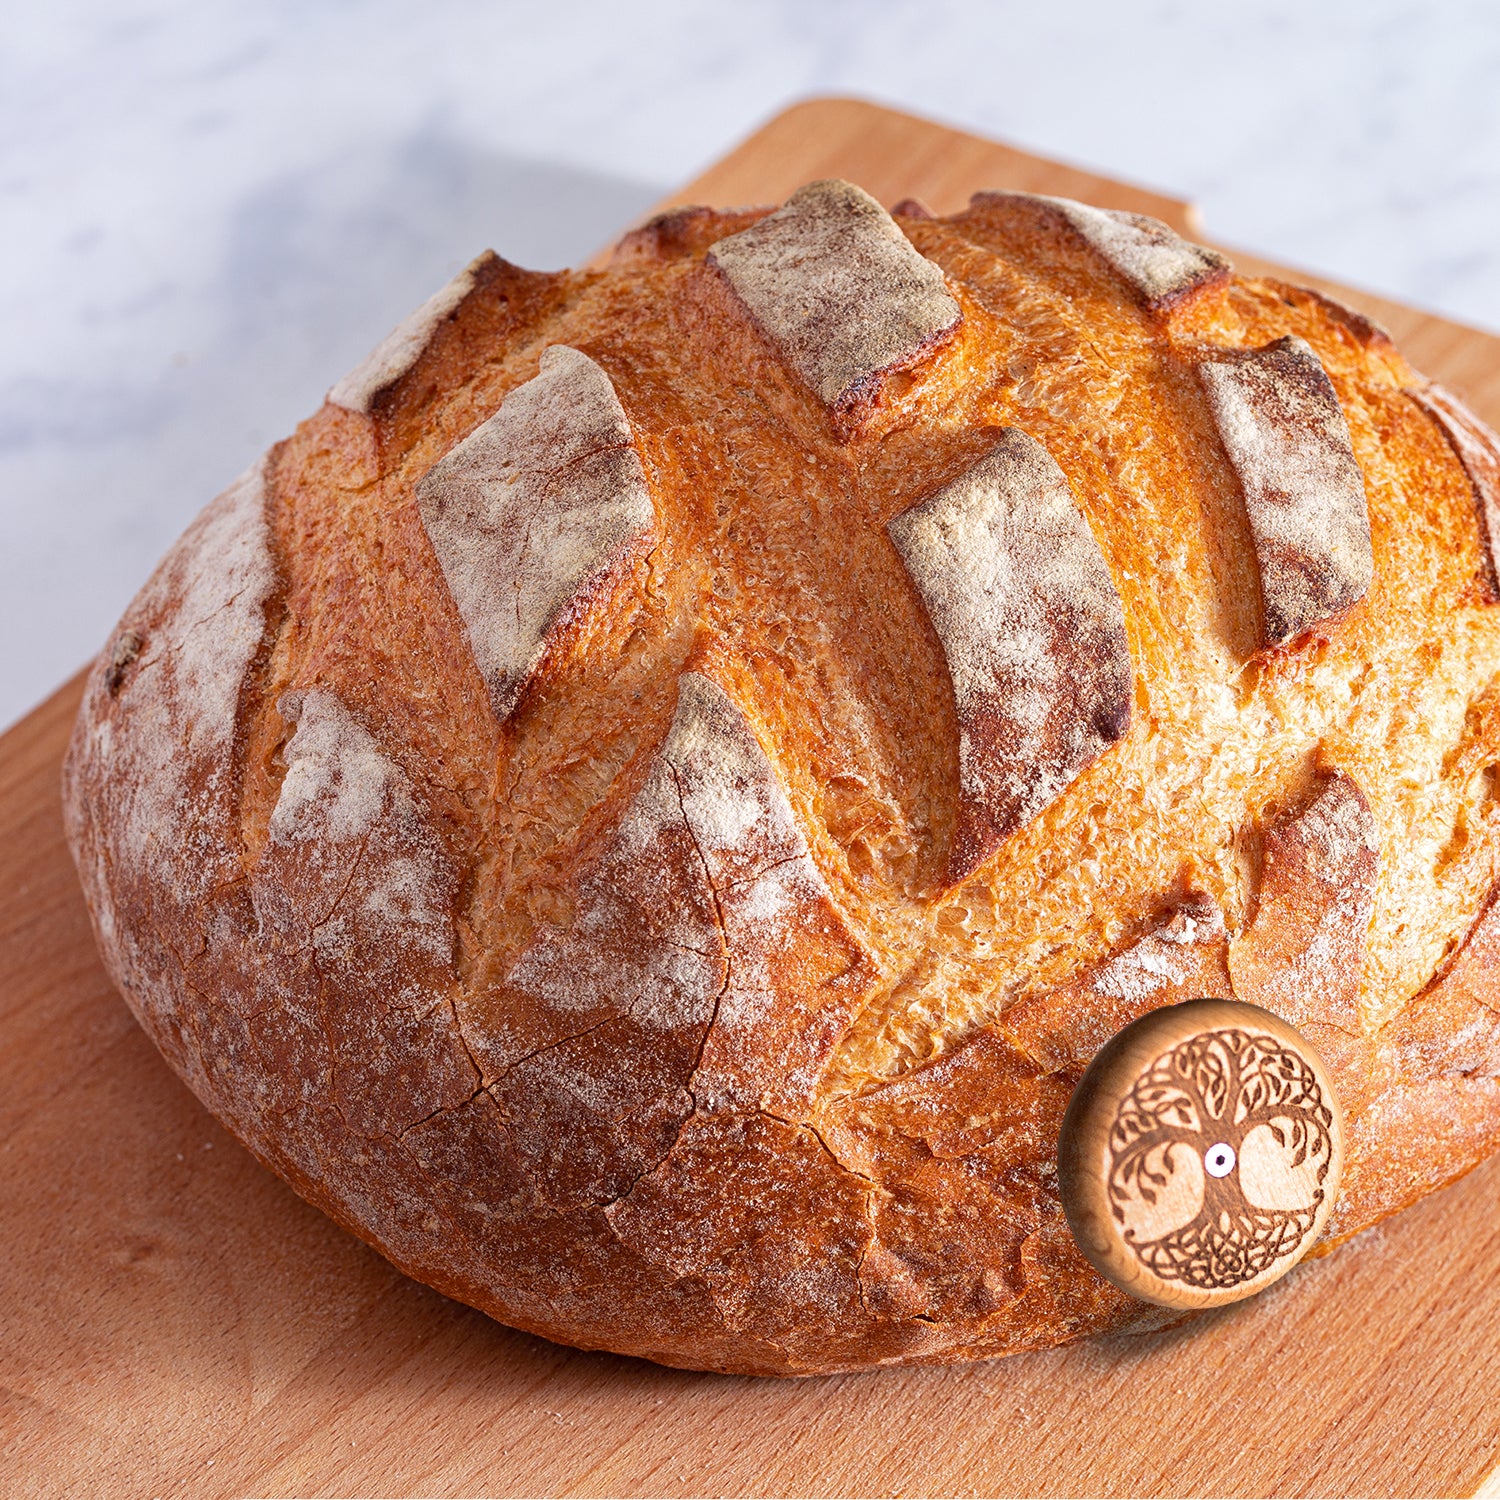 Ufo Bread Lame Cutter Bread Lame Scoring For Tool Sourdough - Temu